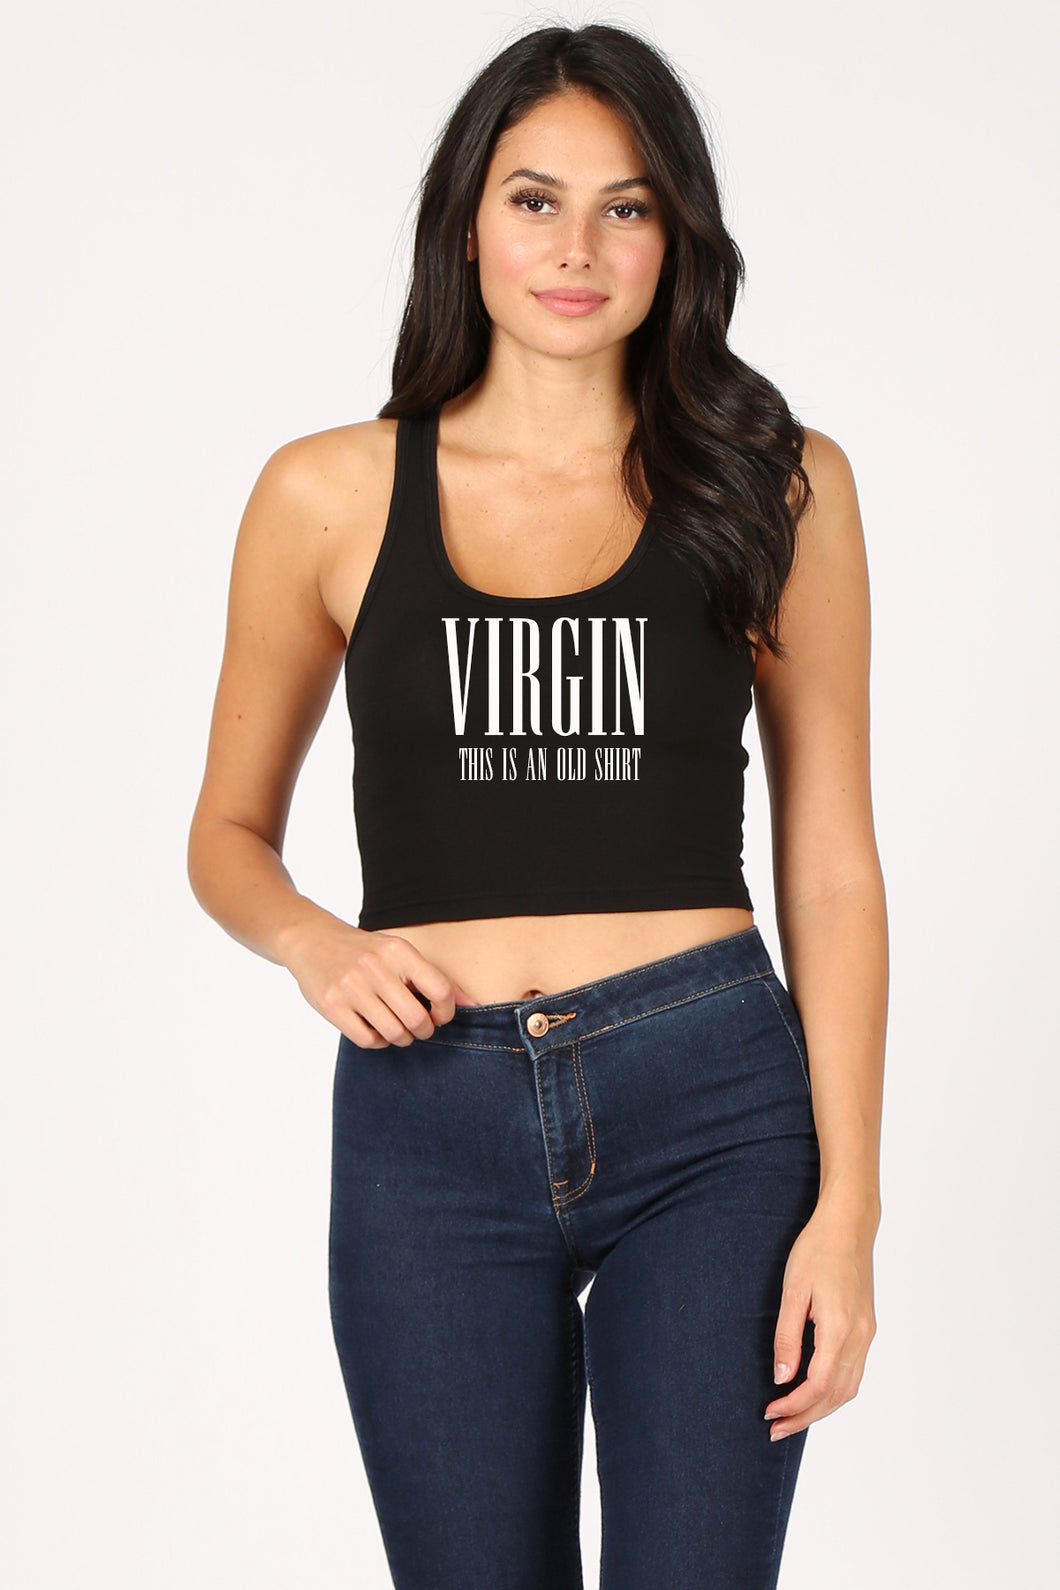 VIRGIN This Is An Old Shirt WOMEN'S CROP TANK TOP